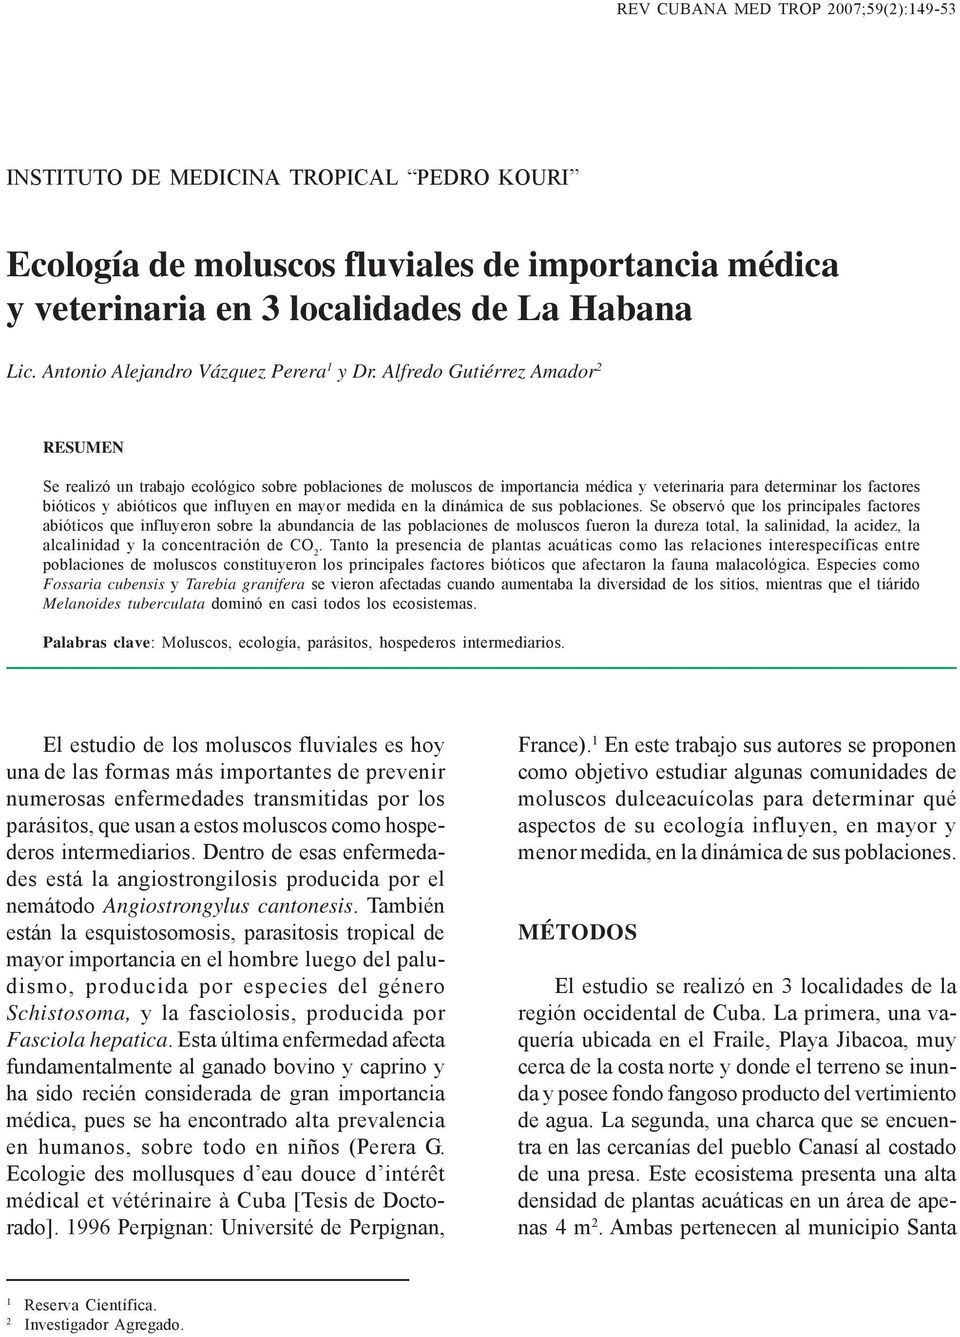 Alfredo Gutiérrez Amador 2 RESUMEN Se realizó un trabajo ecológico sobre poblaciones de moluscos de importancia médica y veterinaria para determinar los factores bióticos y abióticos que influyen en